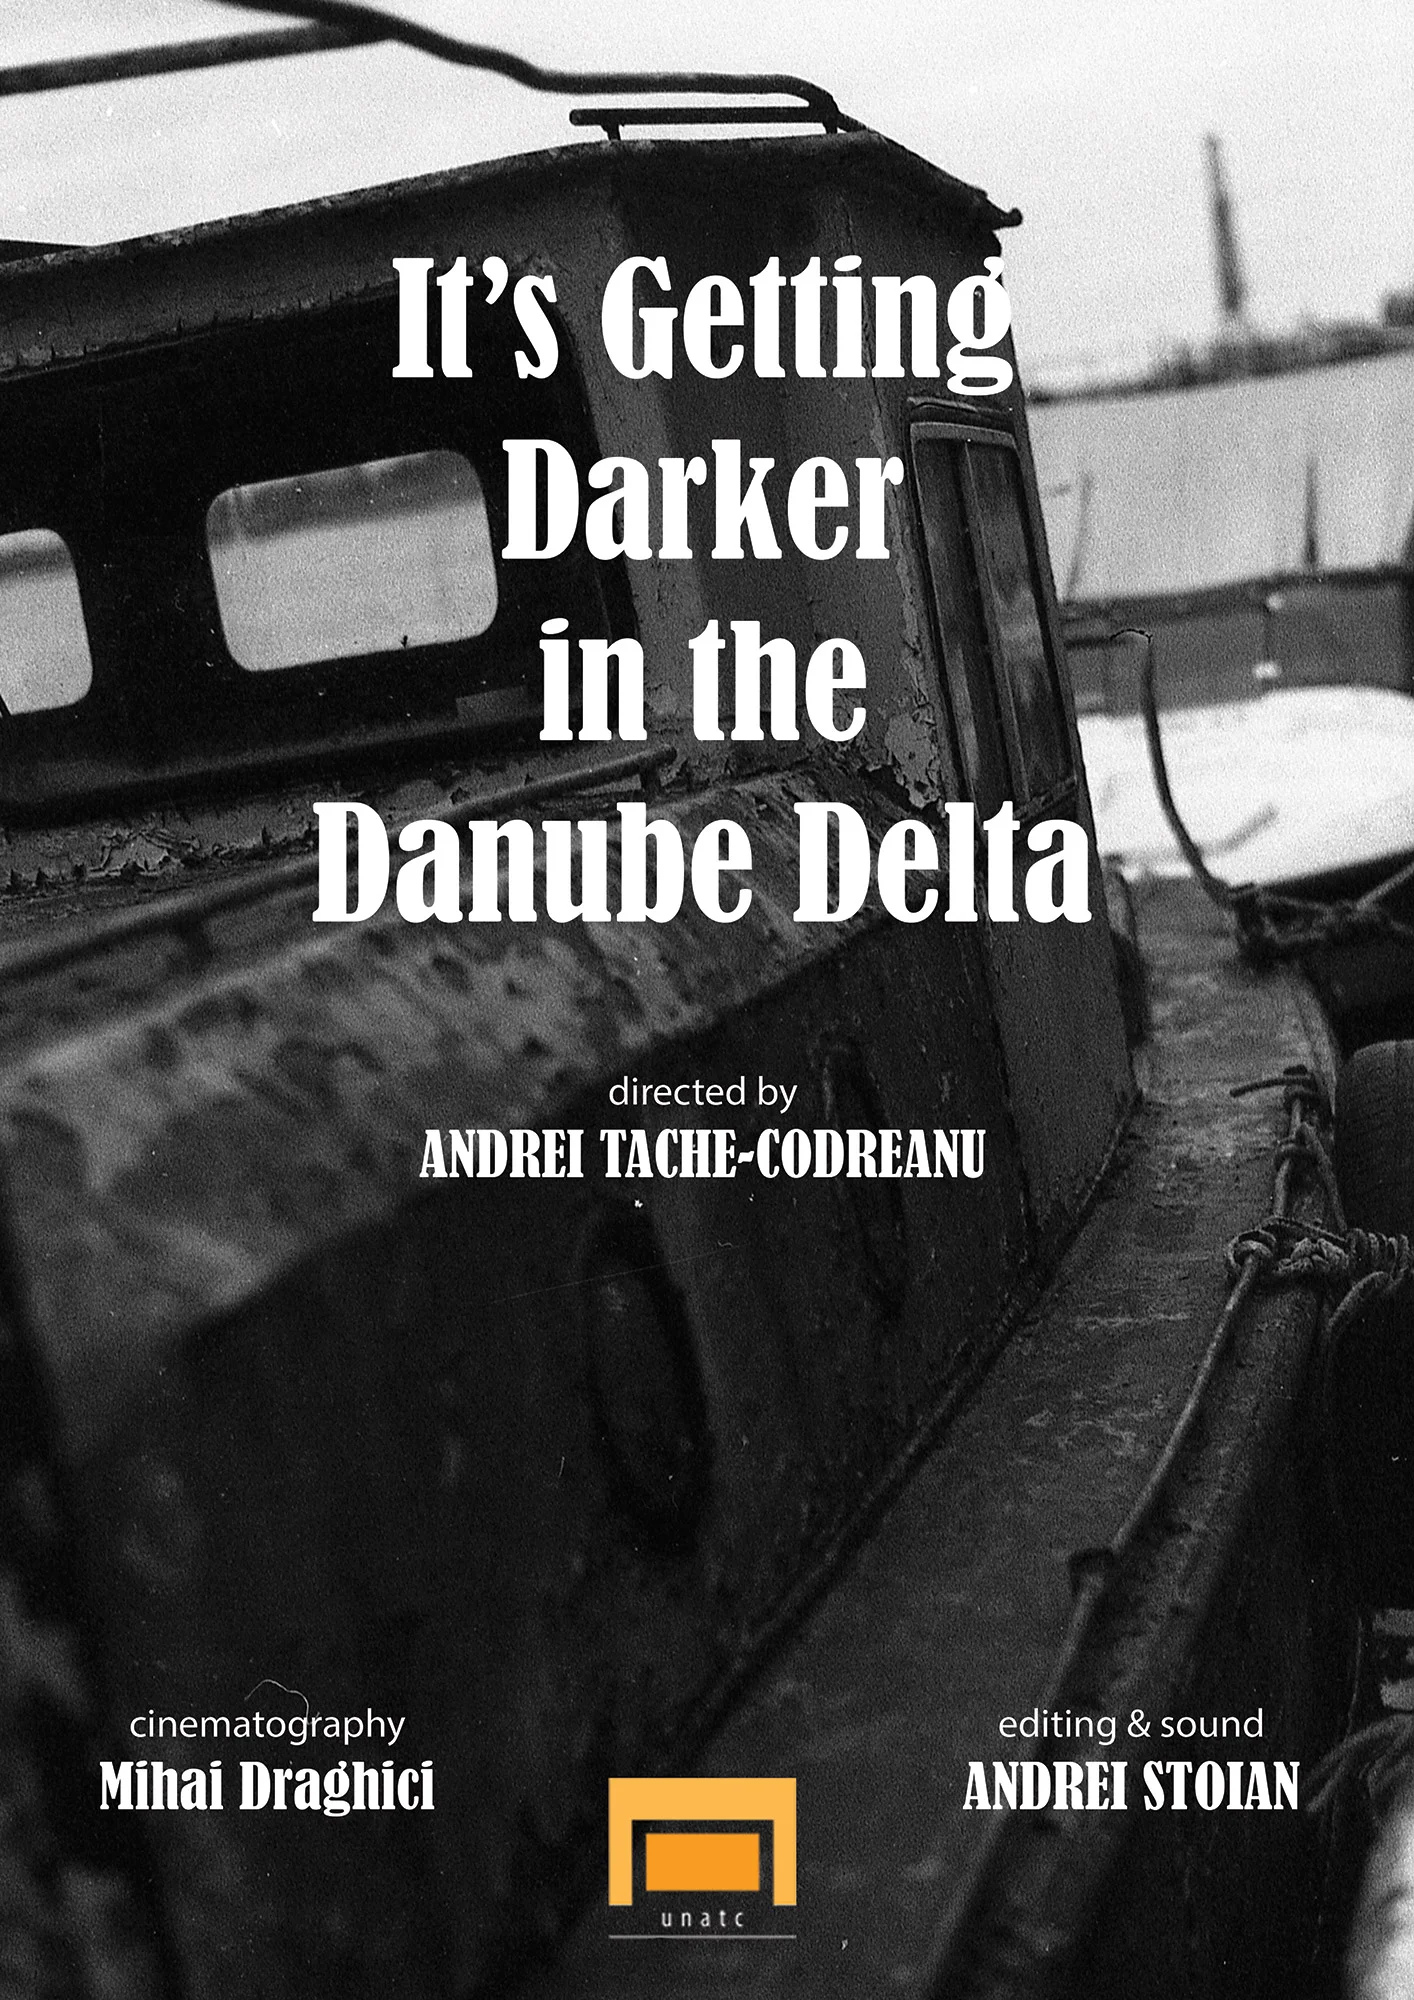 Acum, în Deltă, se lasă seara - regizat de Andrei Tache-Codreanu - documentar online pe CINEPUB